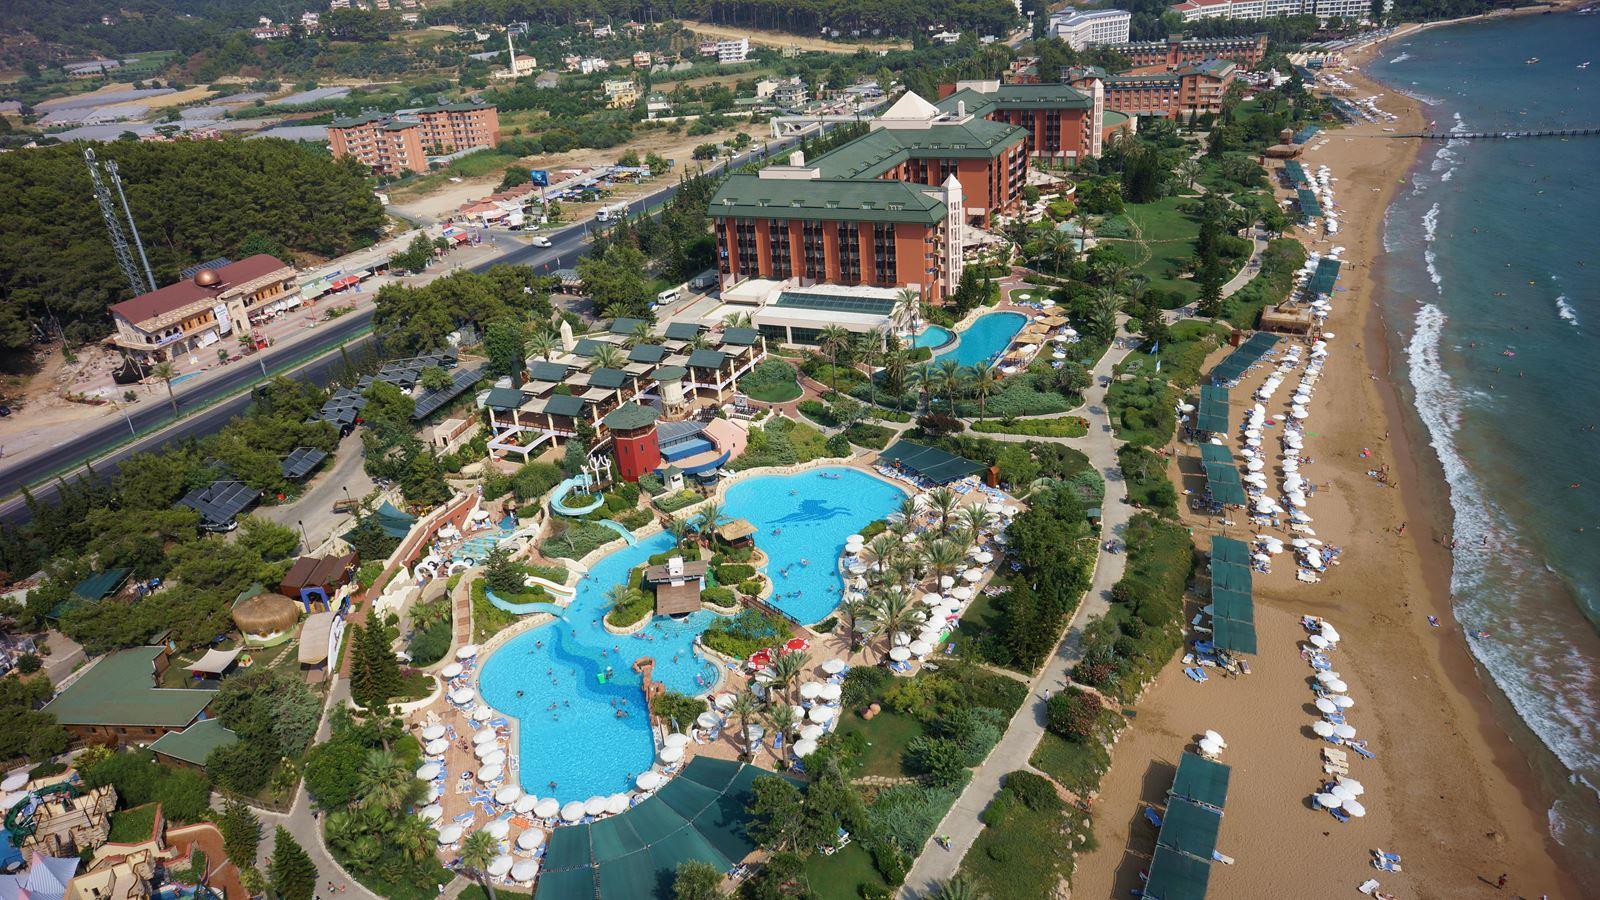 Pegasos Resort 5*